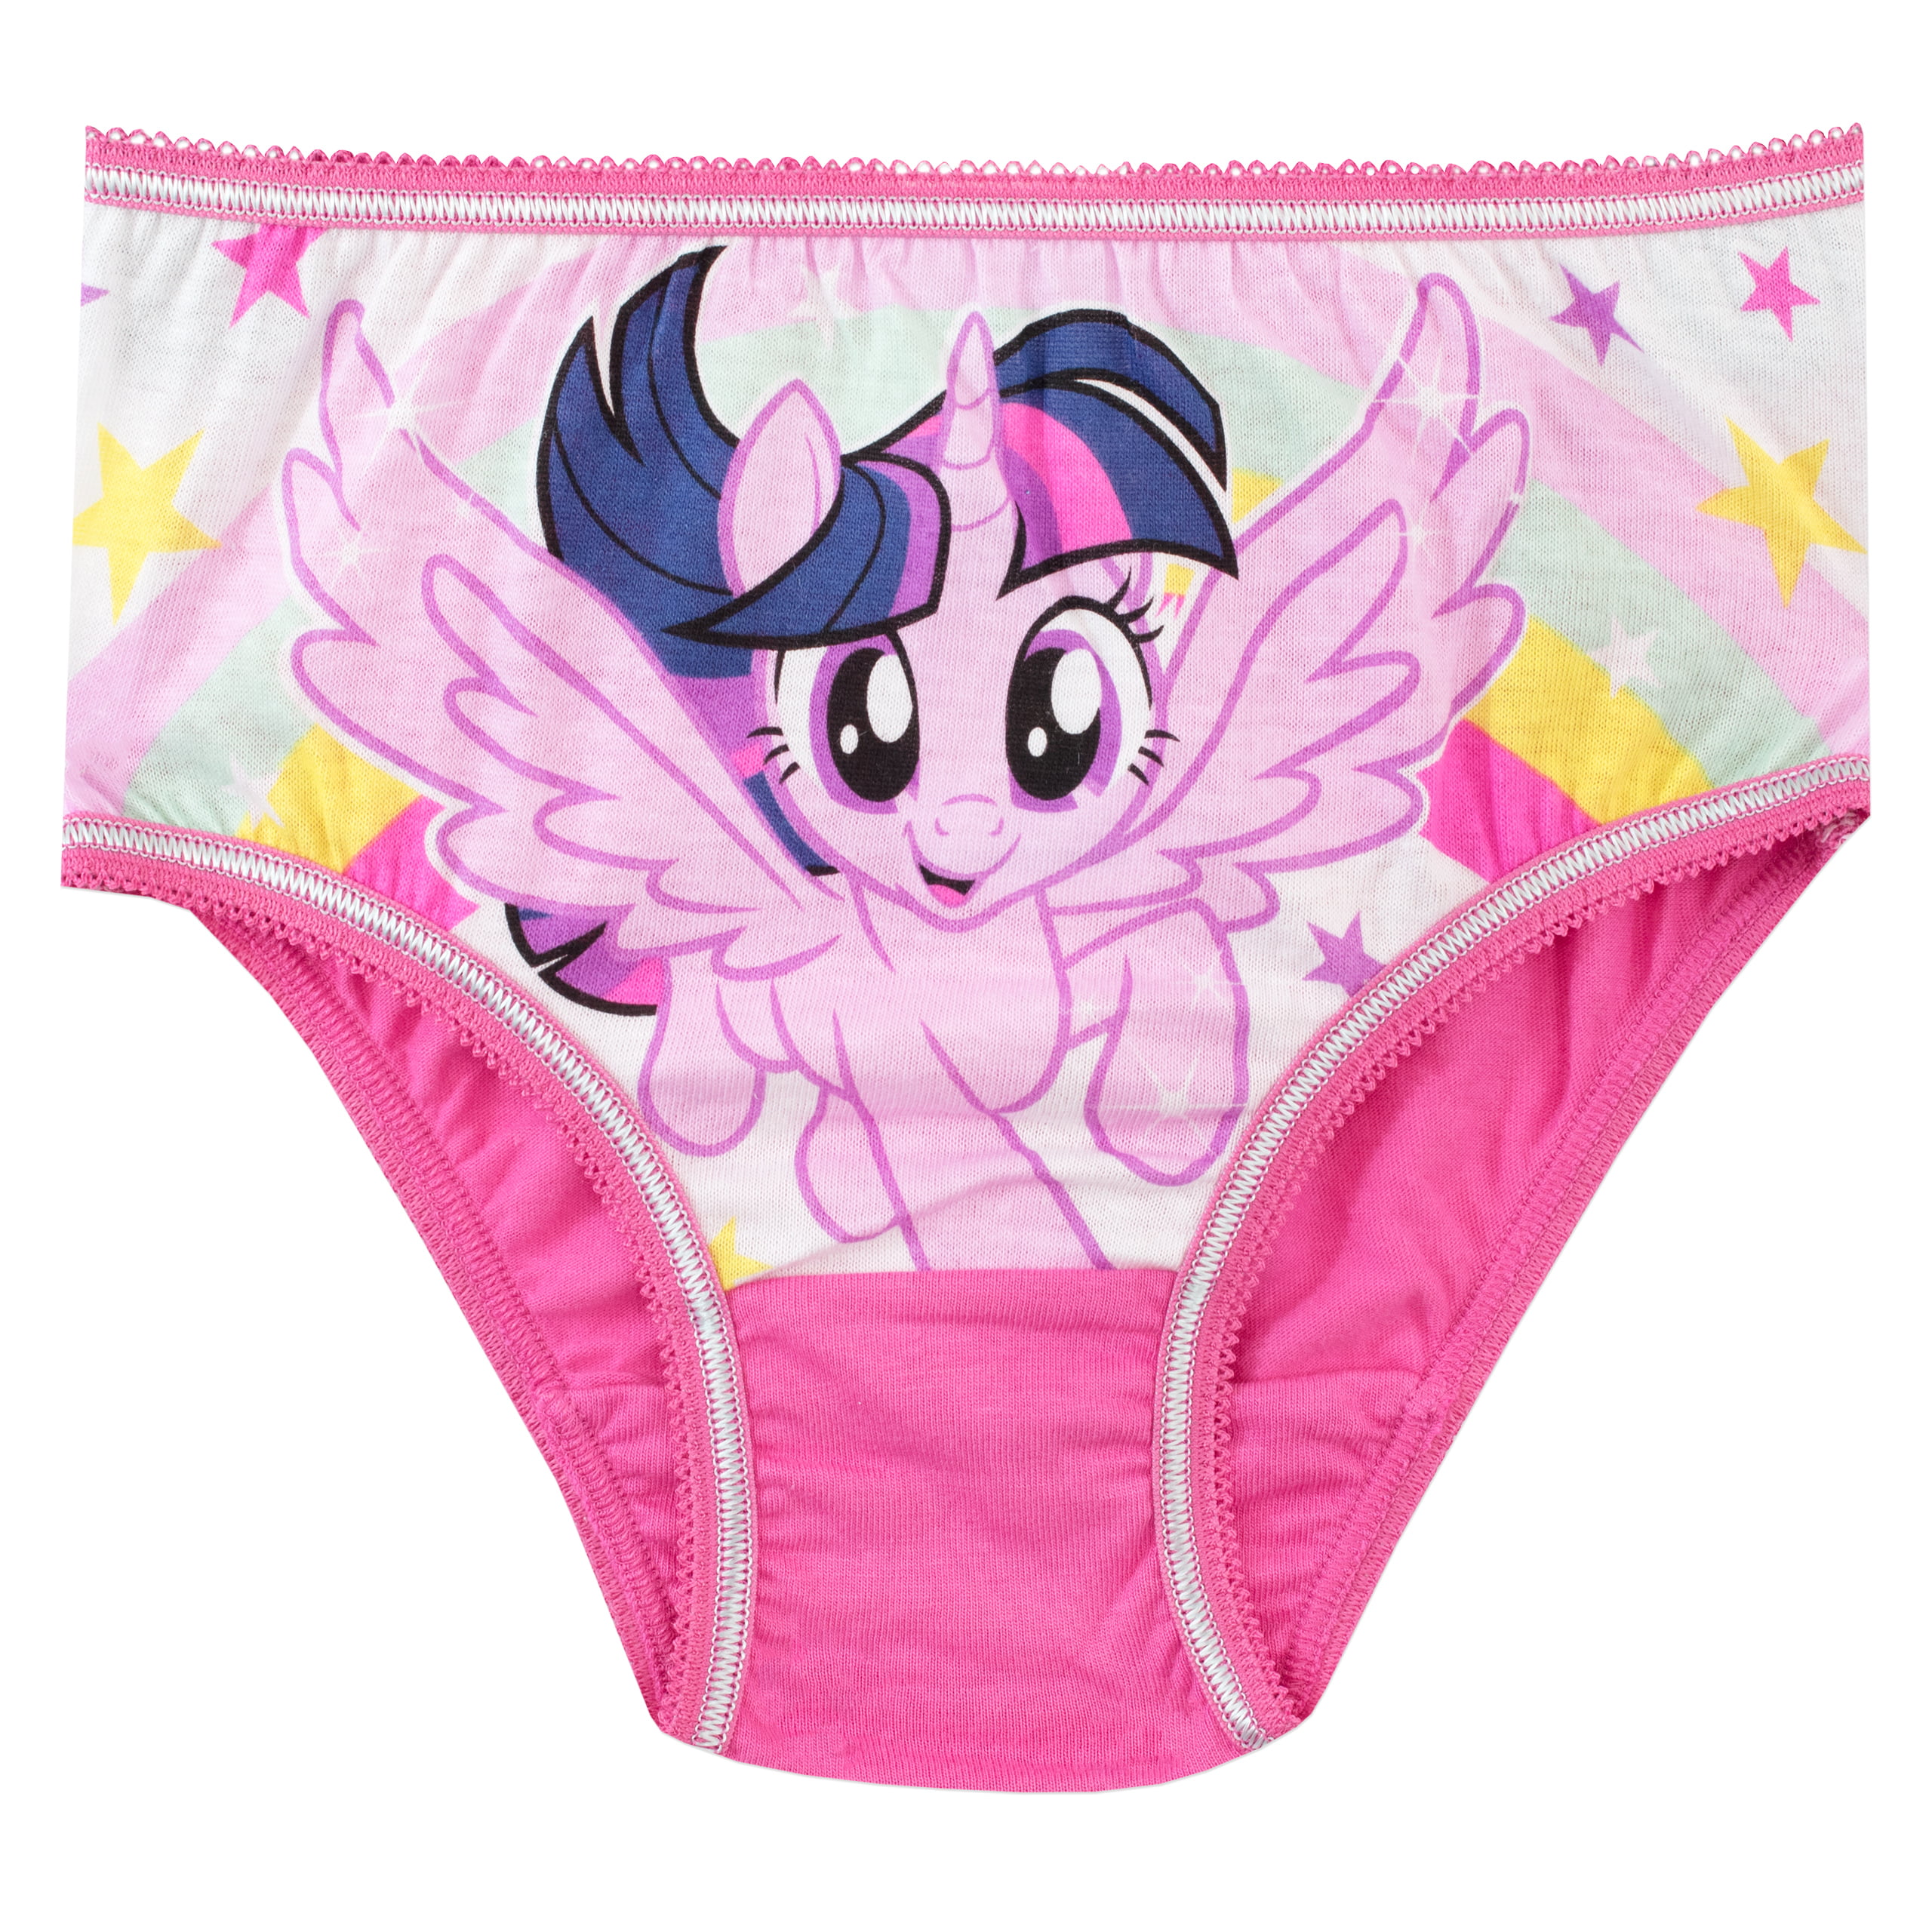 My Little Pony Girls Underwear 5 Pack Sizes 2T-8